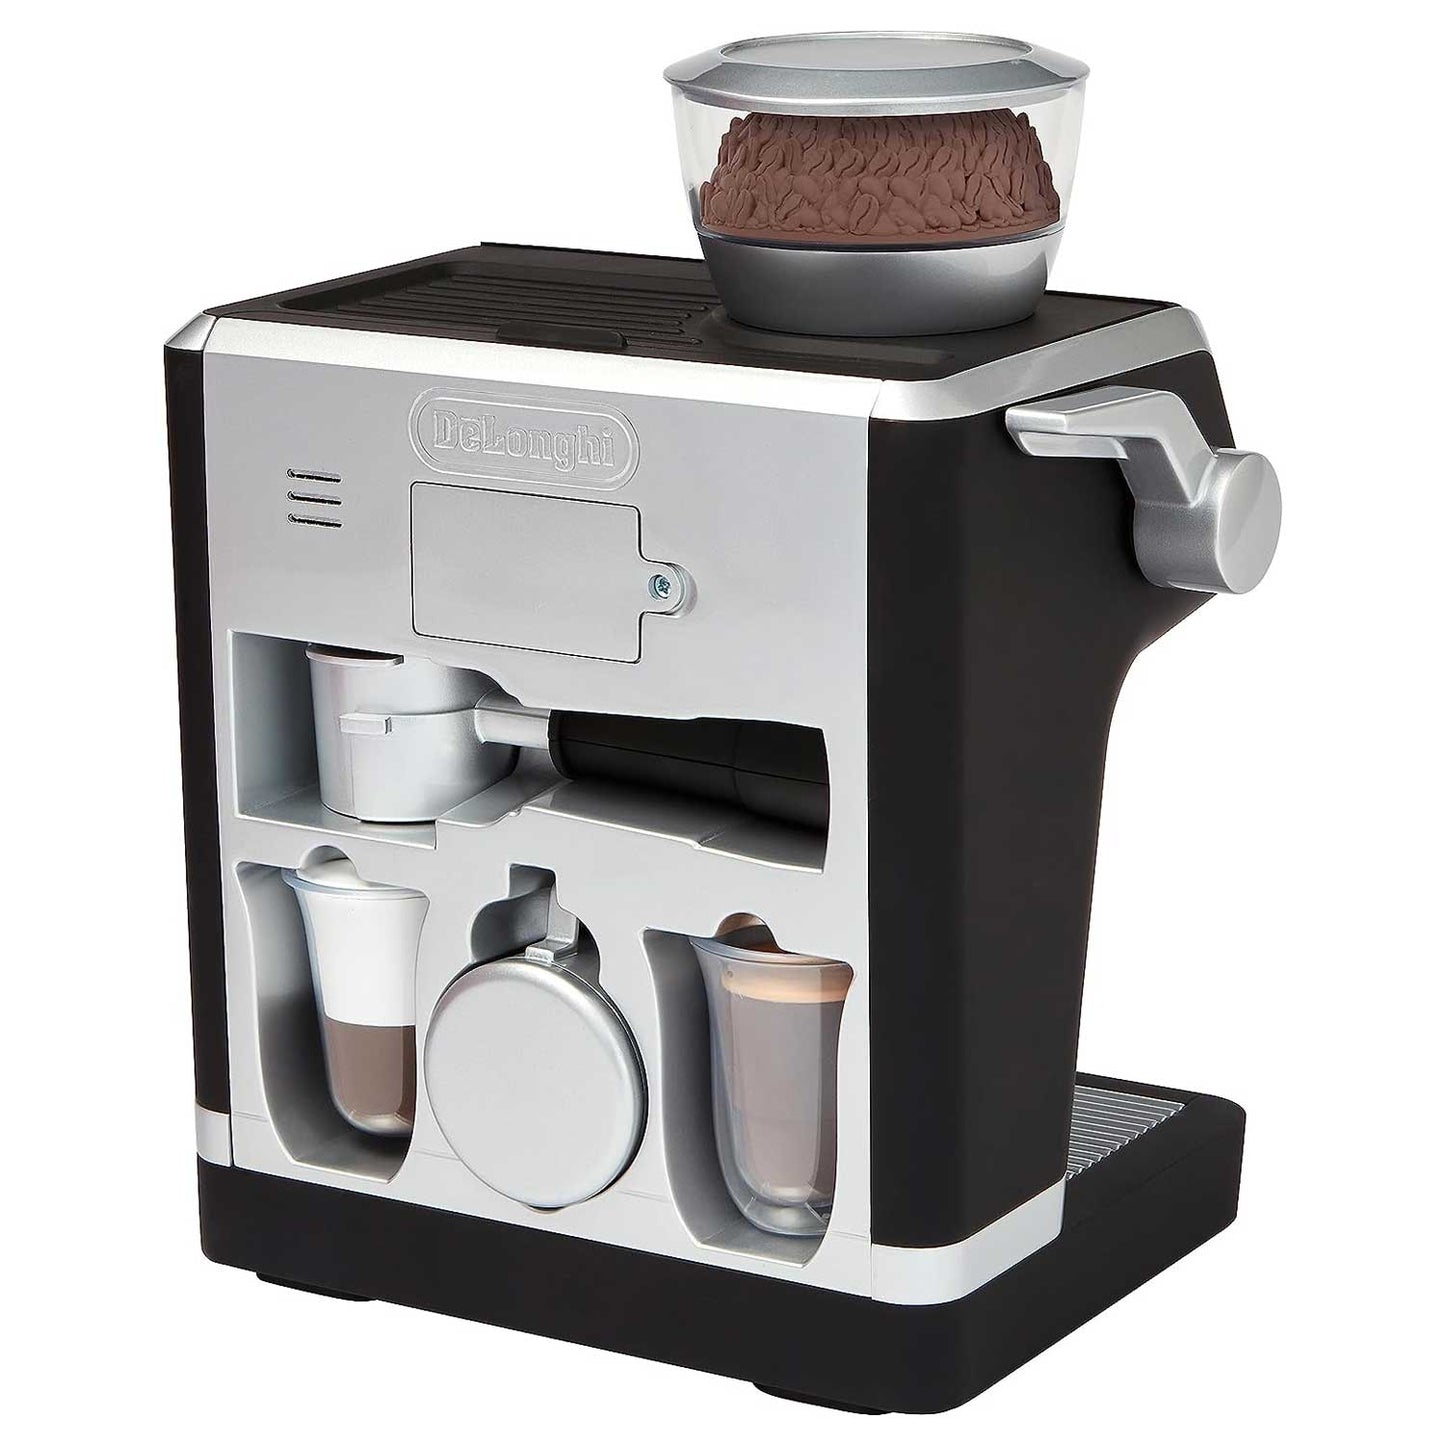 ODS Toys - De Longhi Coffee Machine